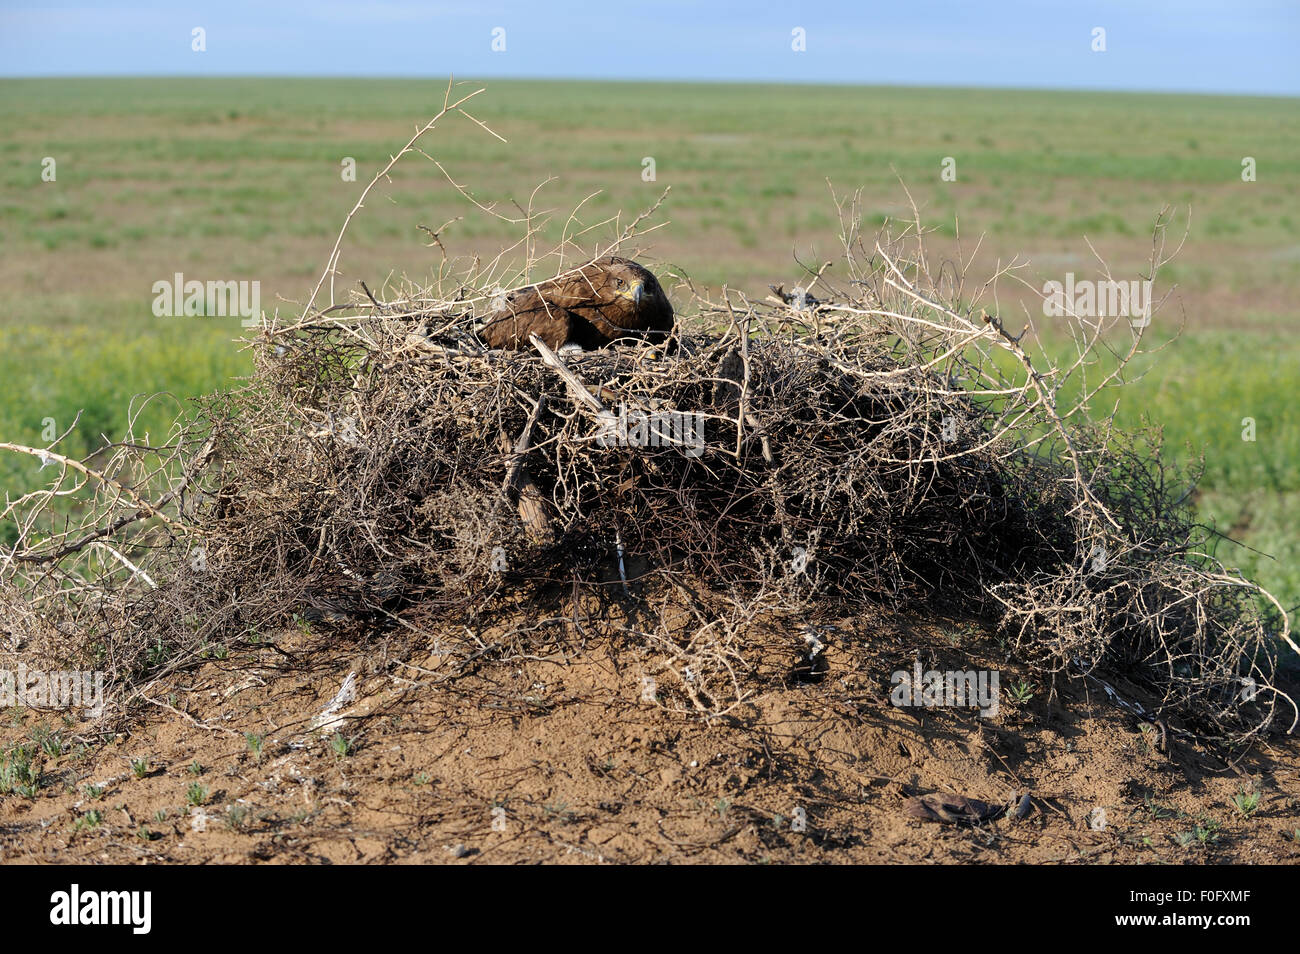 L'aigle des steppes (Aquila nipalensis) sur son nid, Cherniye zemli (terre noire), Réserve naturelle de Kalmoukie, en Russie, en mai 2009 Banque D'Images